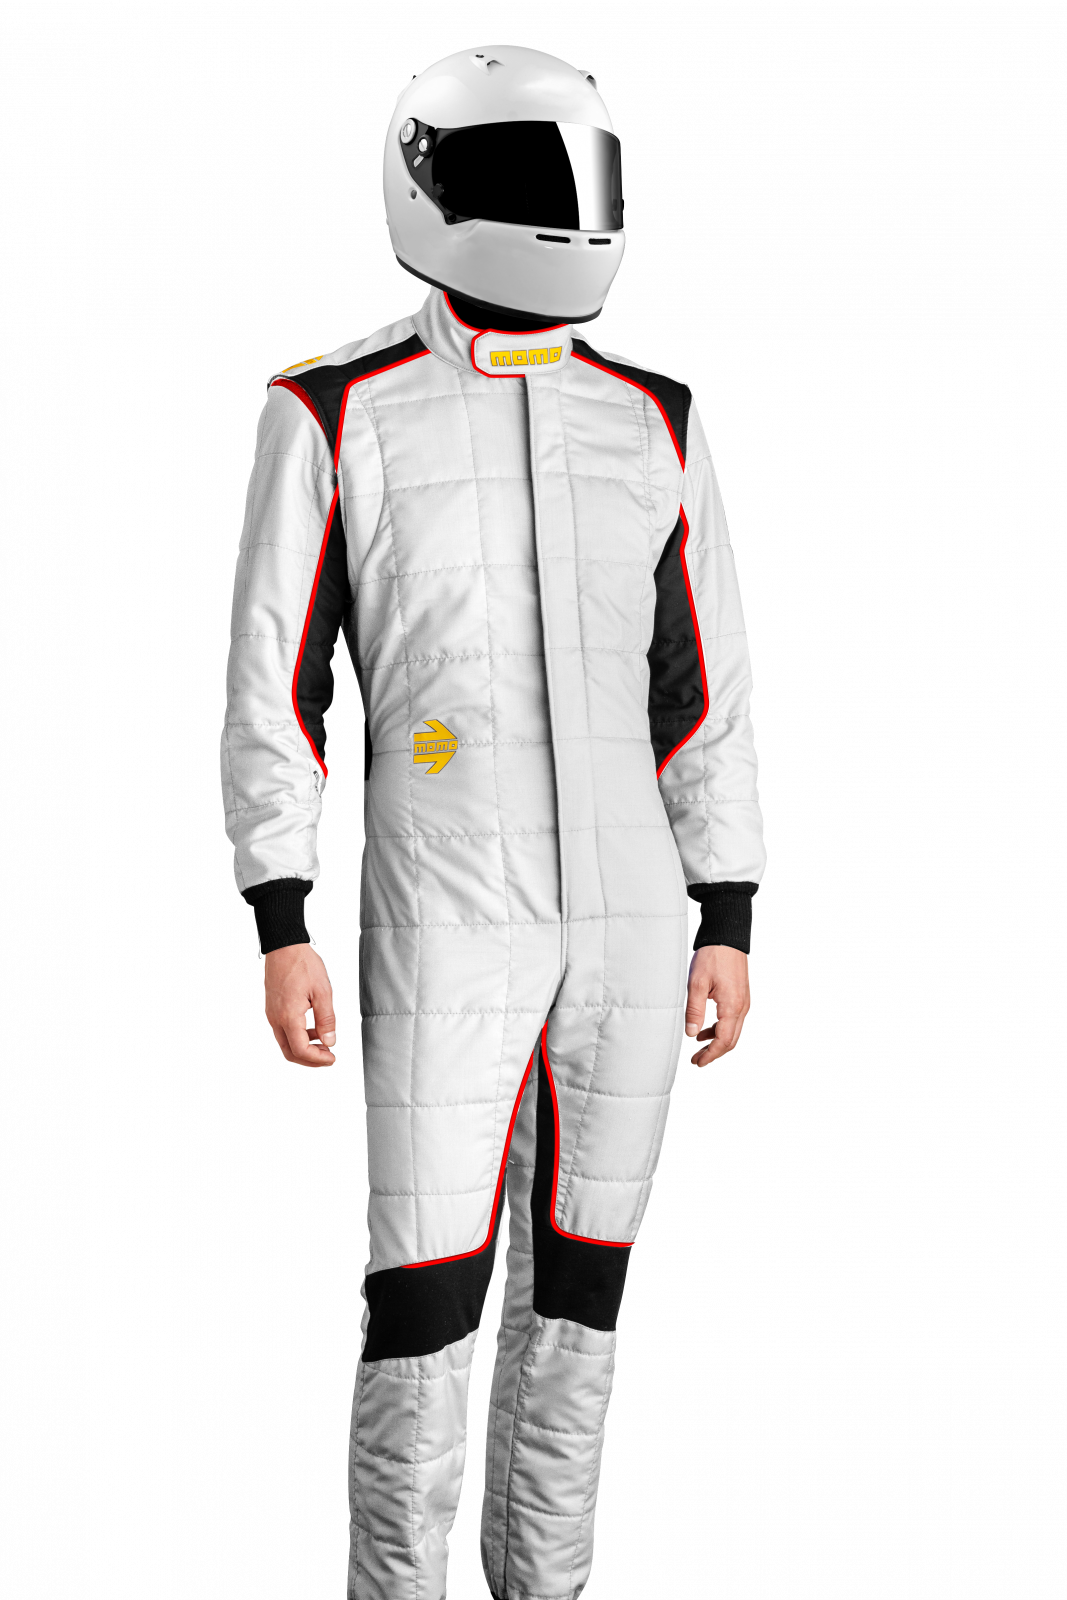 MOMO Corsa Evo White Size 56 Racing Suit TUCOEVOWHT56